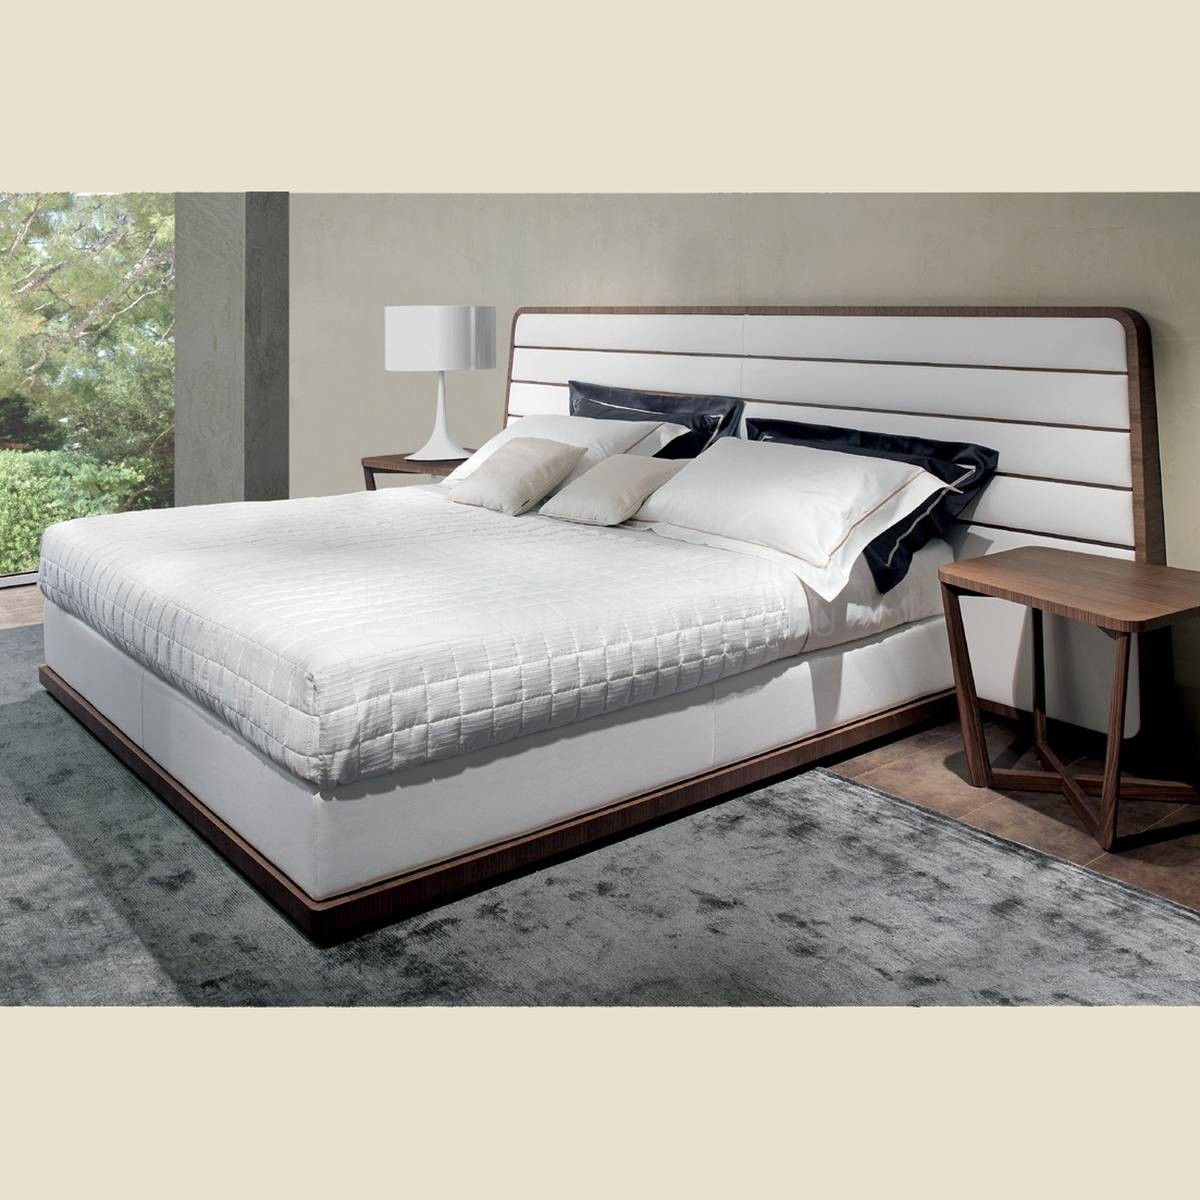 Кровать с мягким изголовьем Gilda/bed из Италии фабрики BESANA